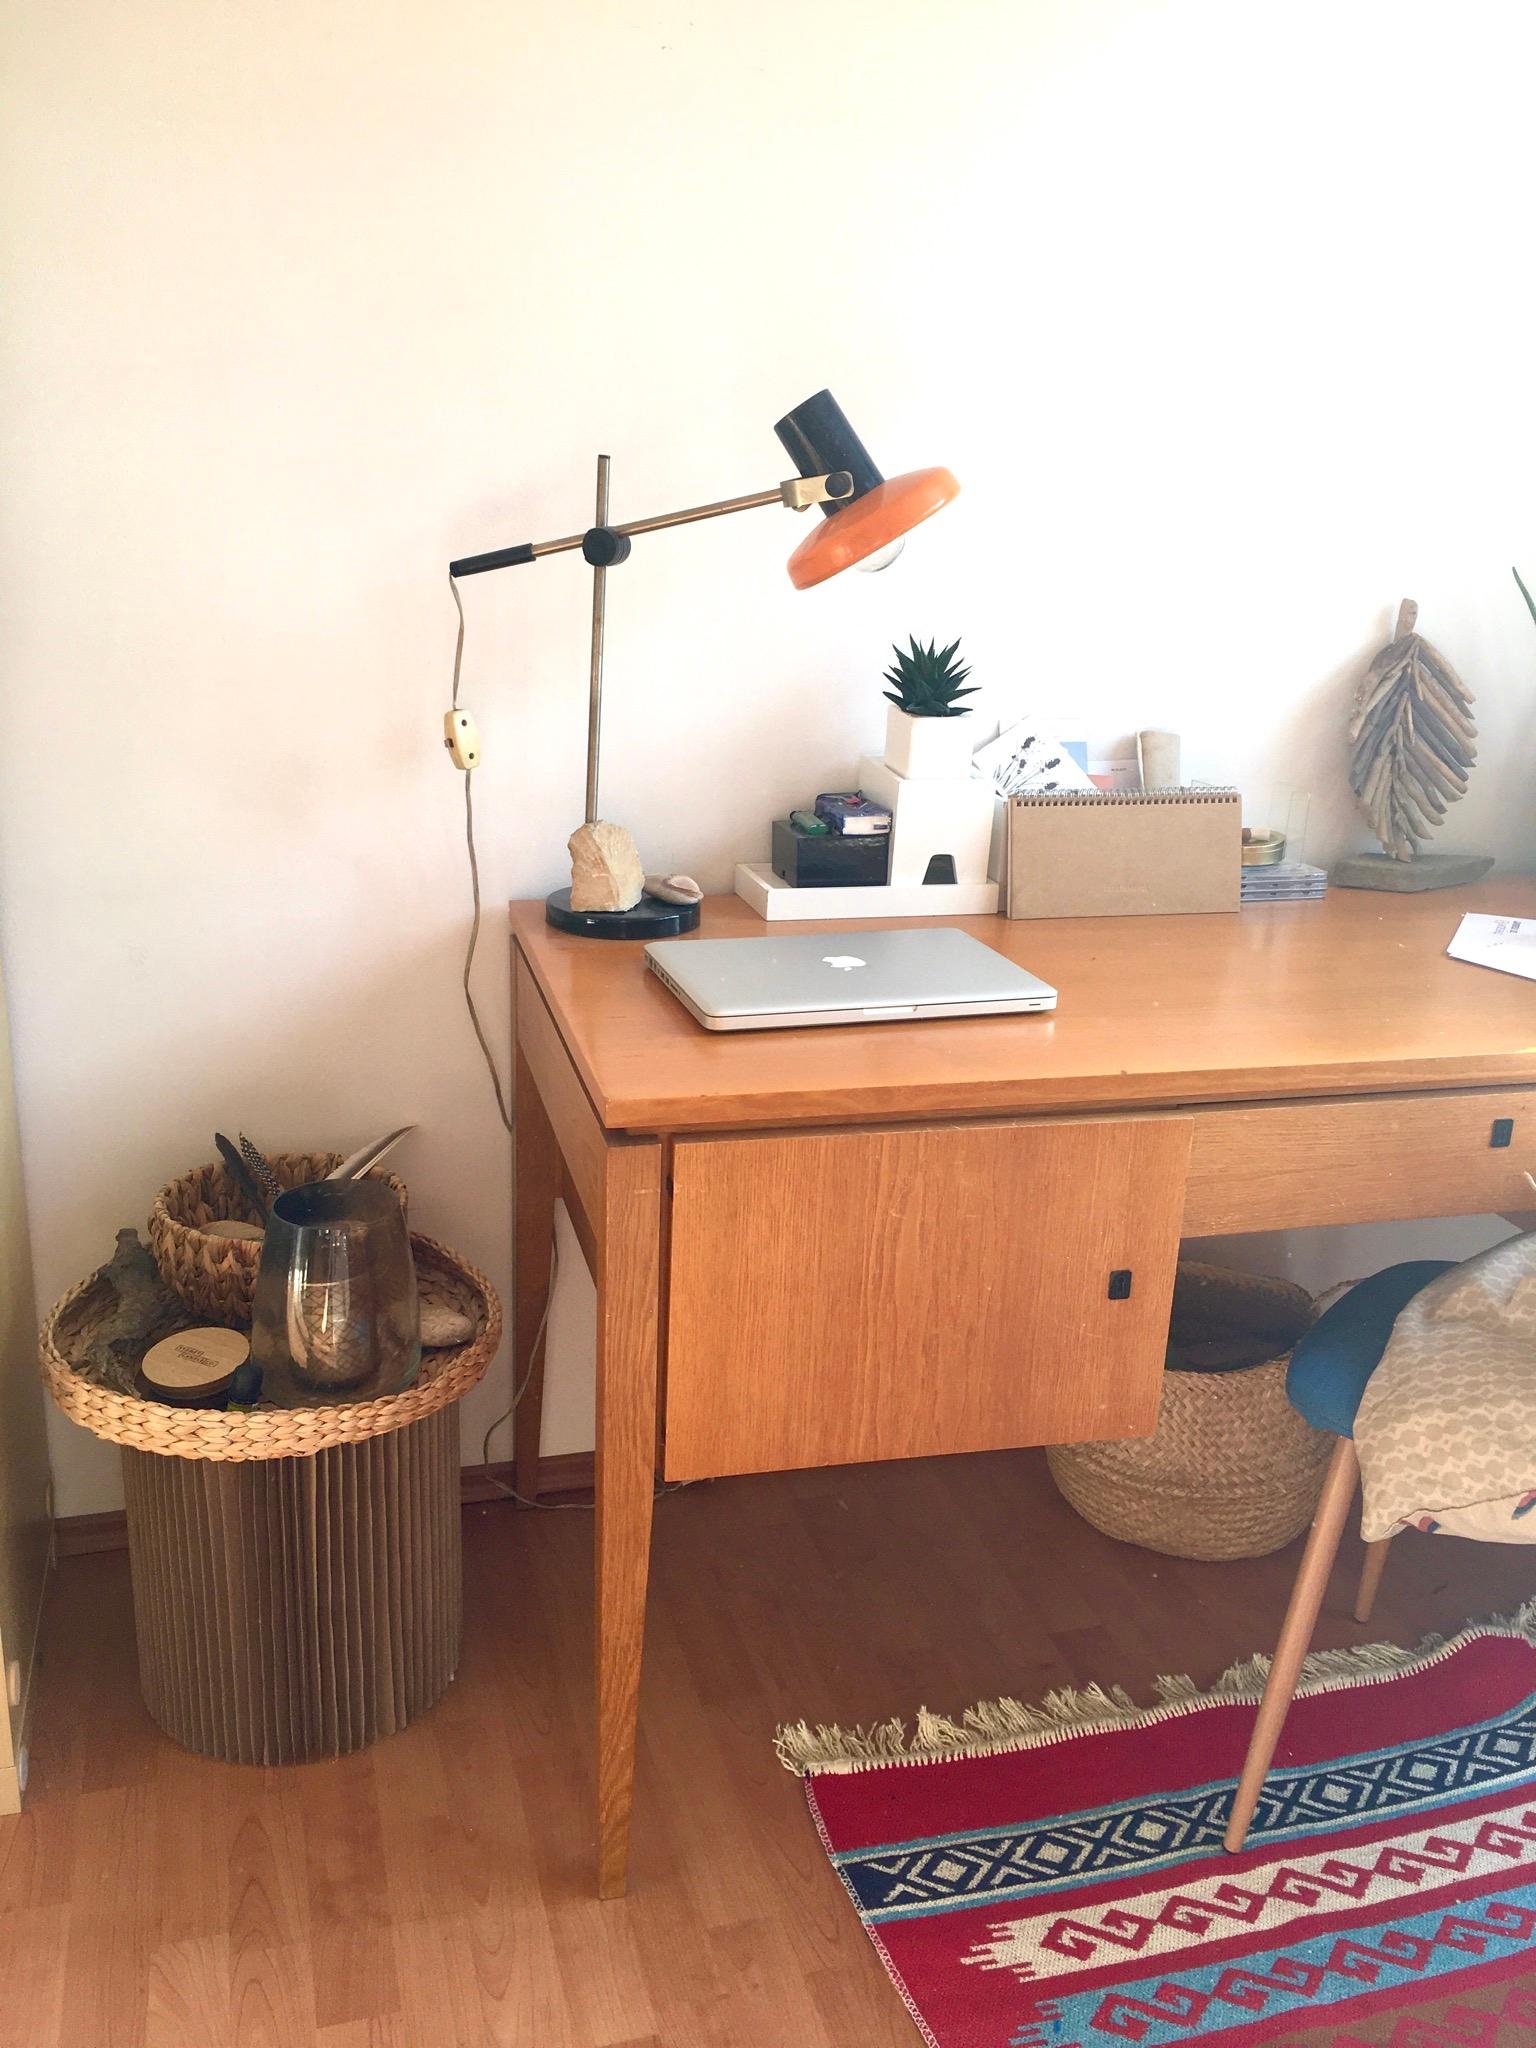 Meine beiden Lieblingsstücke die beide zufällige Funde im Müll waren. Schreibtisch und Lampe. #vintage#desk#wood#lamp